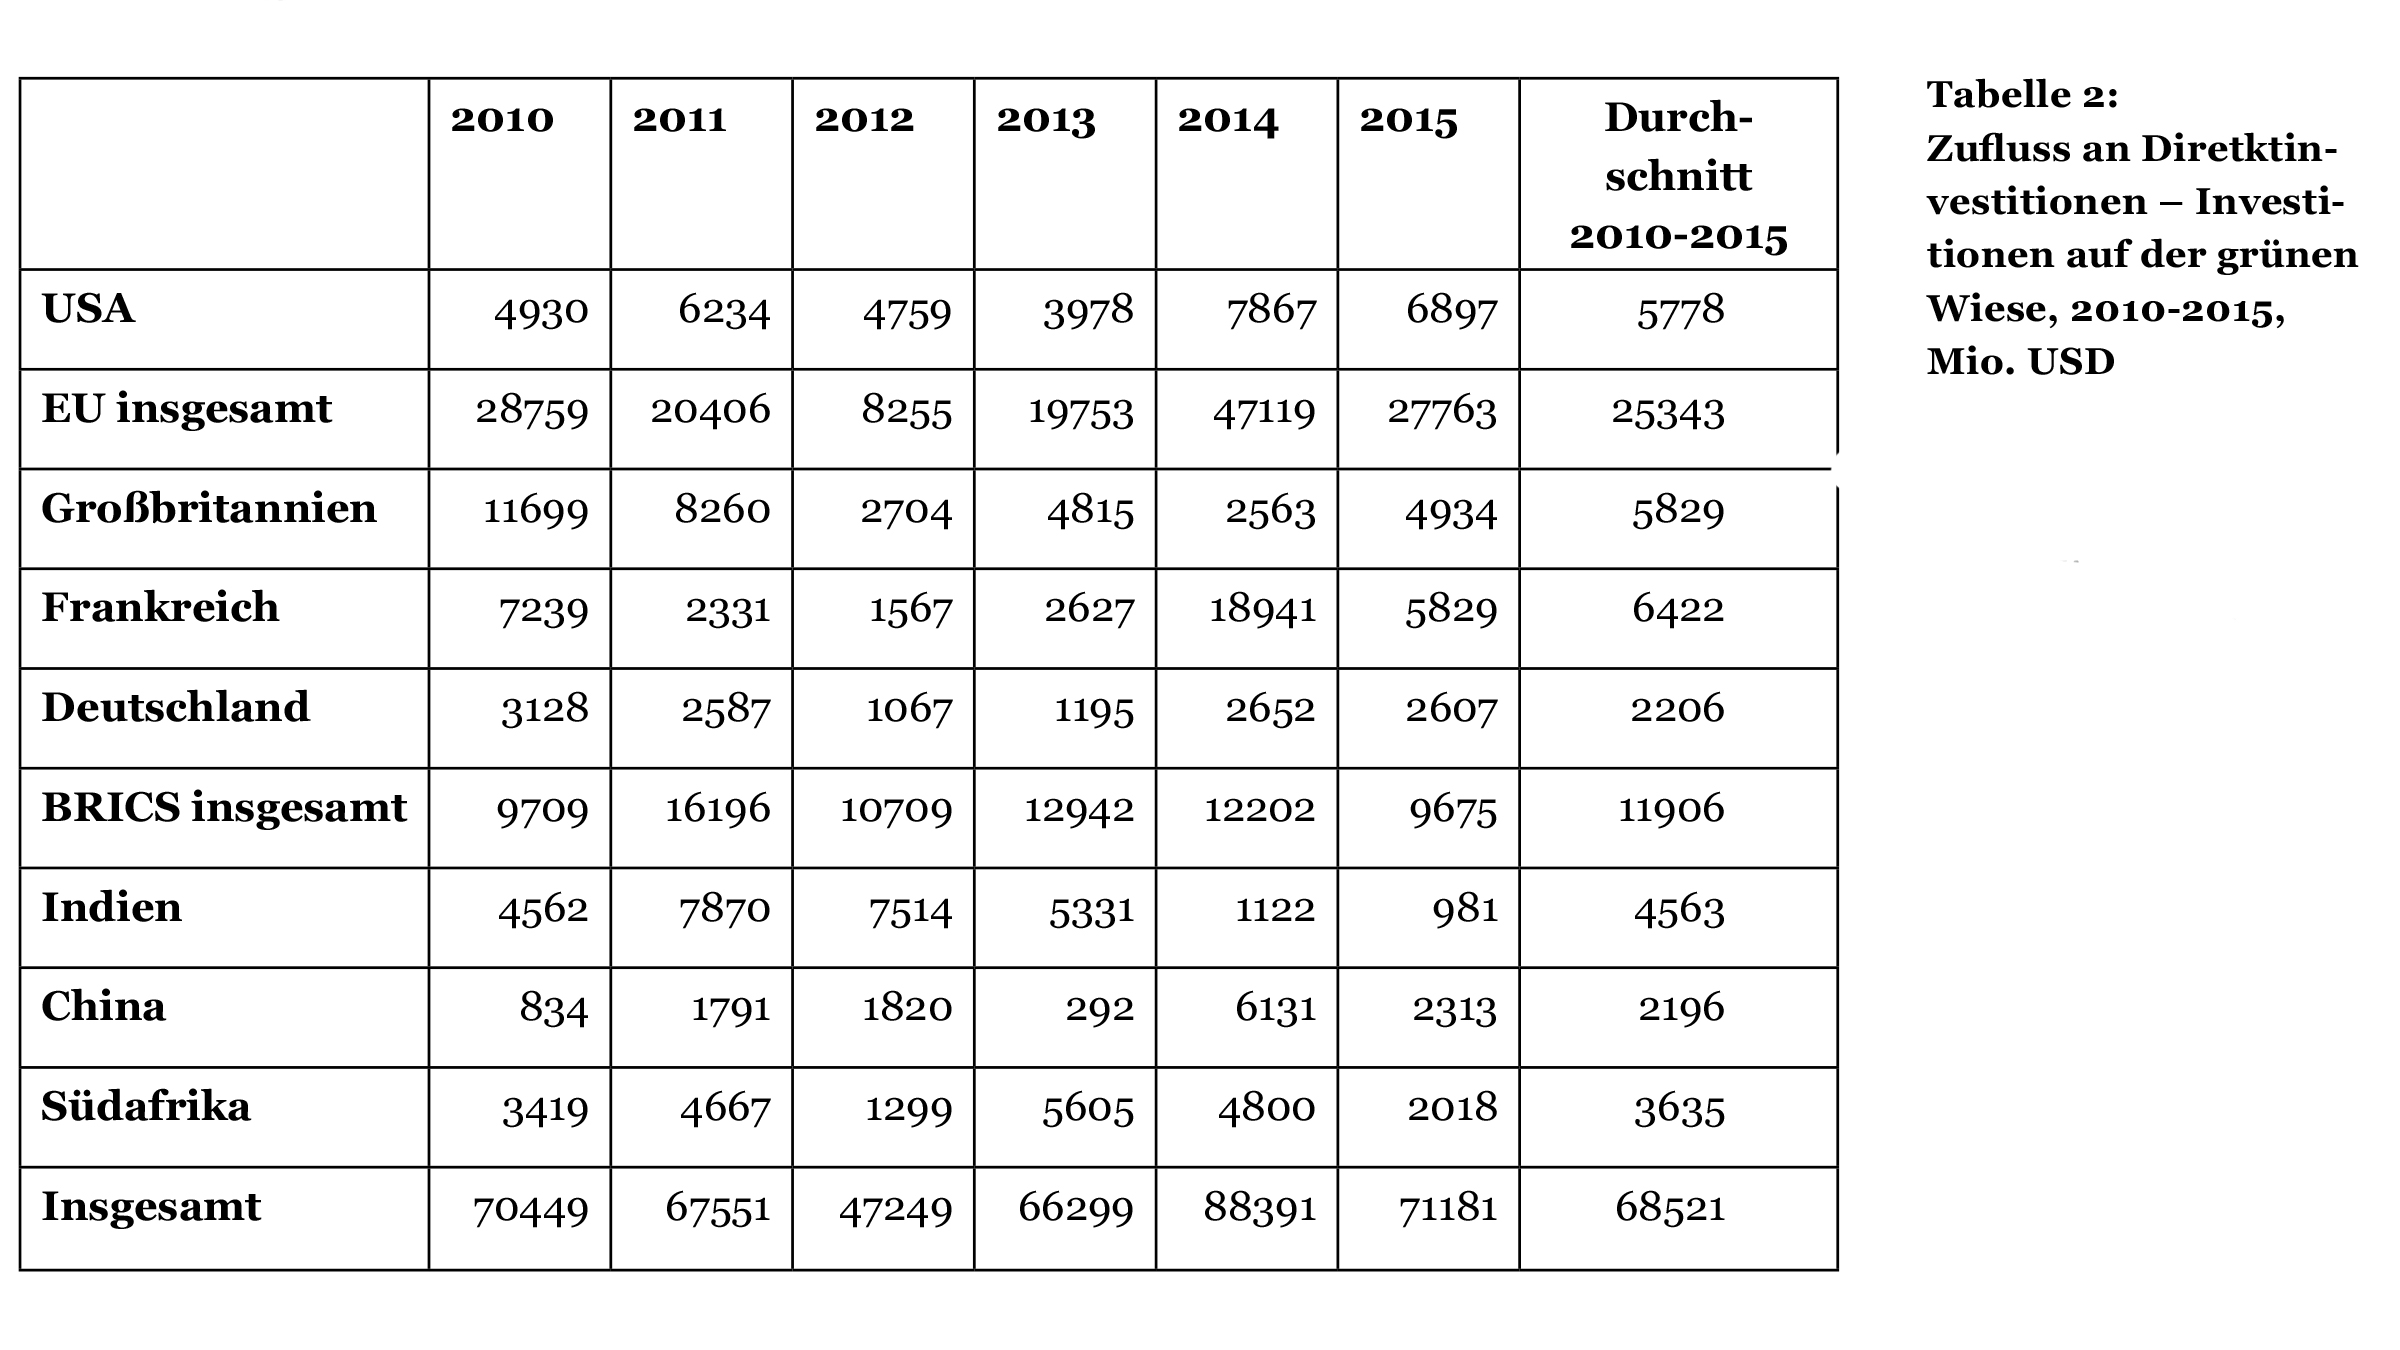 Tabelle Zufluss an Diretktinvestitionen – Investitionen auf der grünen Wiese, 2010-2015, Mio. USD